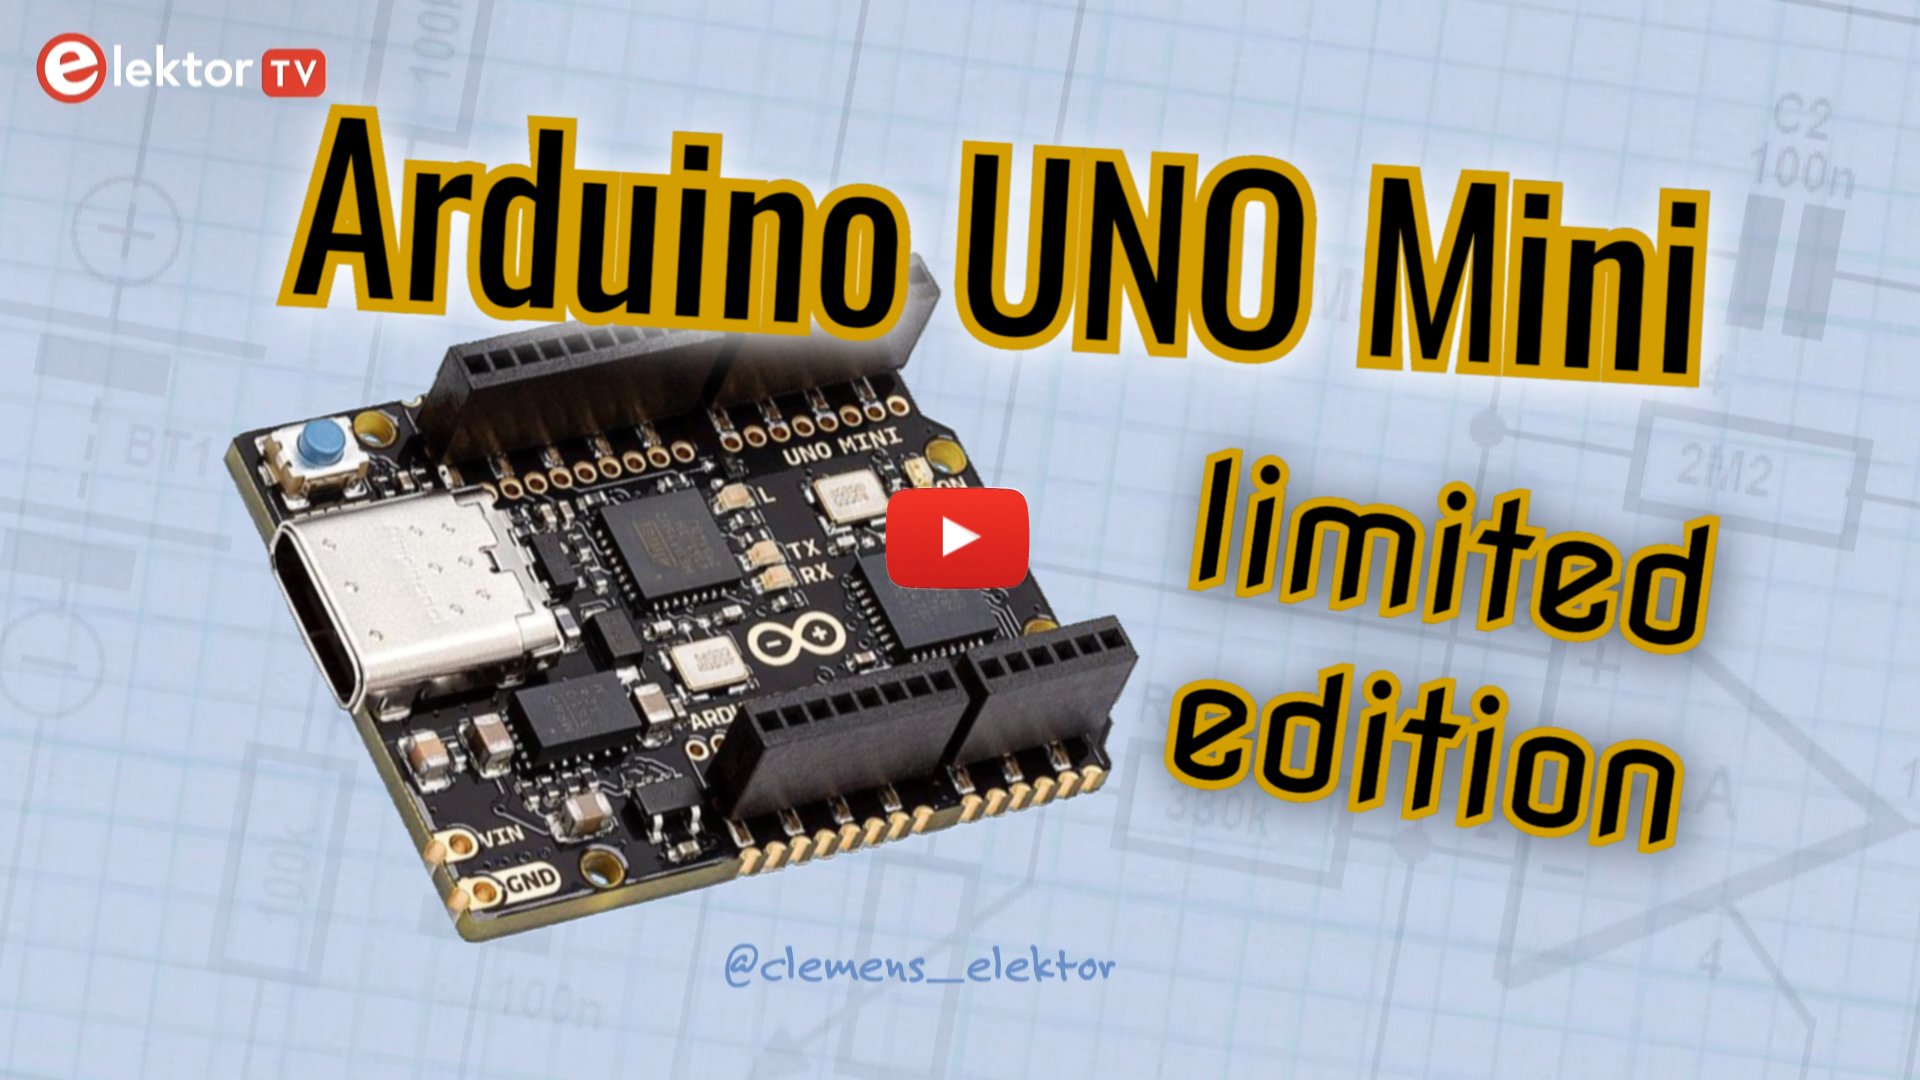 UNO Mini Limited Edition